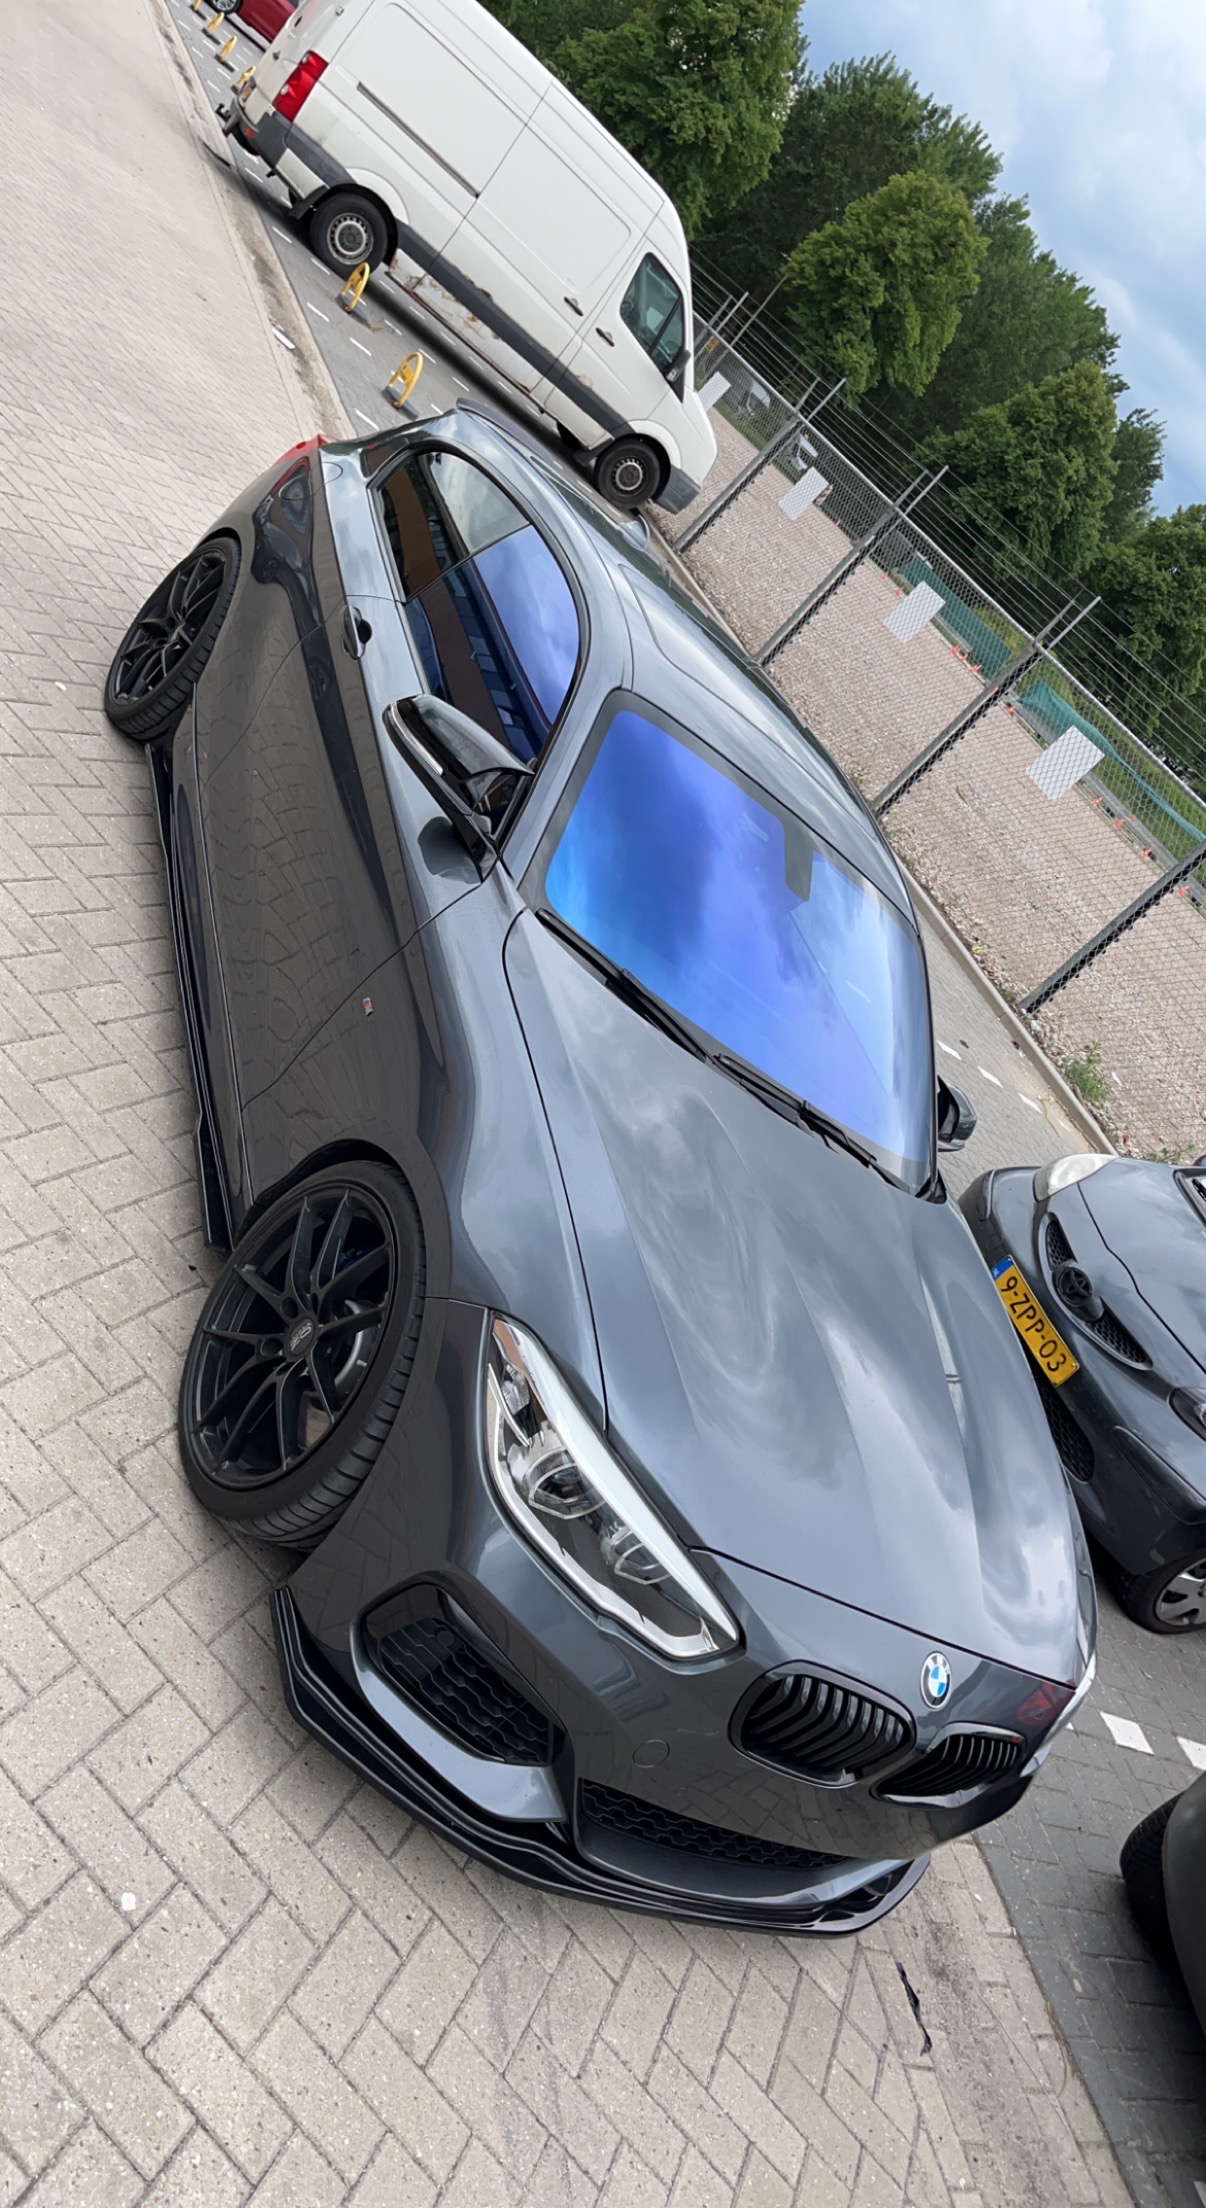 BMW M1 in Tilburg geparkeerd vlakbij een garage op een parkeerplaats. Met de achterruiten zwart getint en chameleon tint